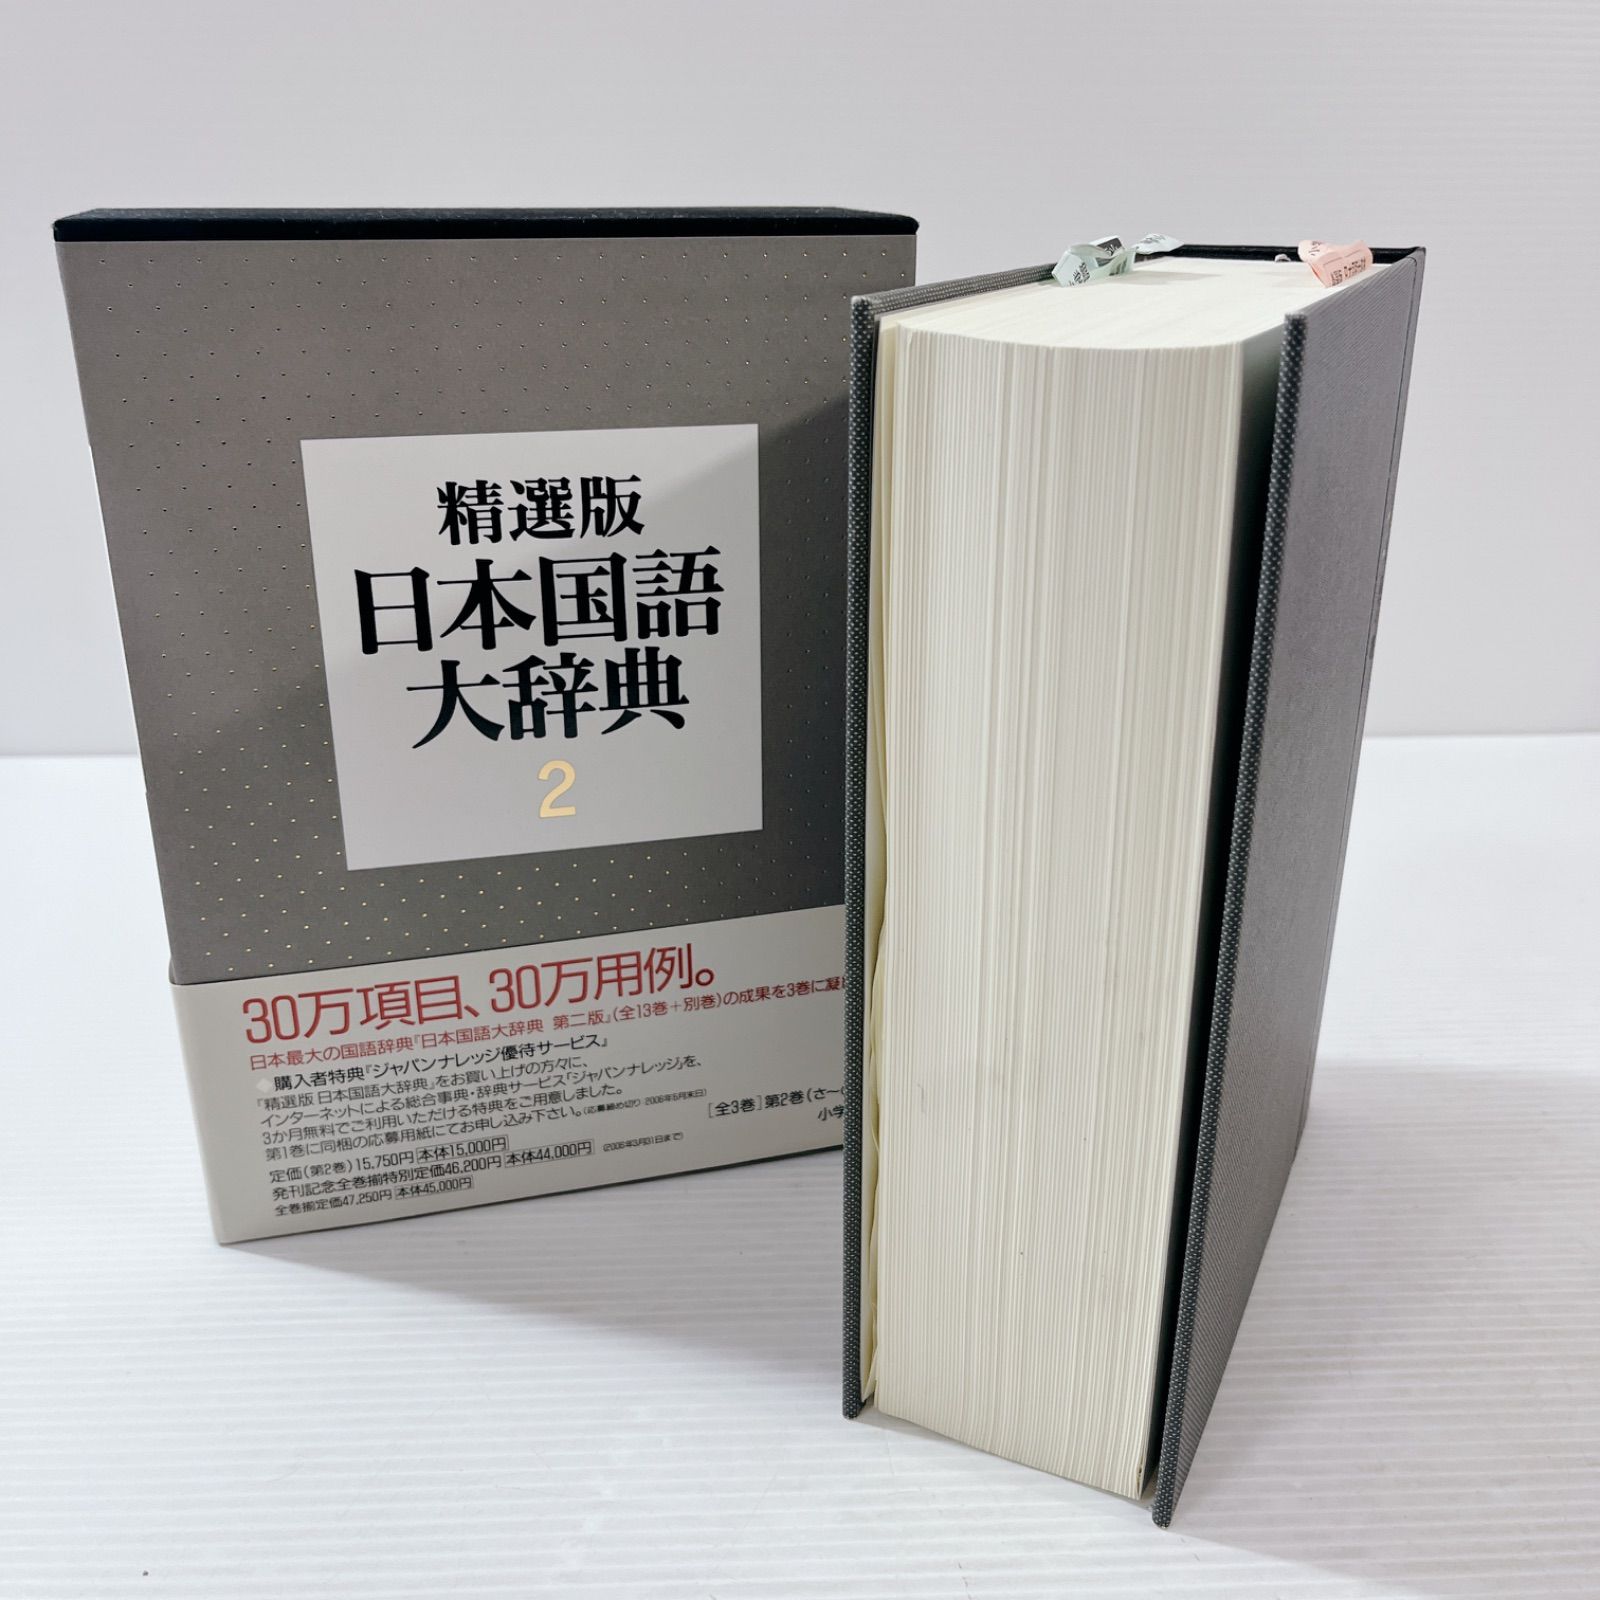 精選版 日本国語大辞典 (第3巻) - 学習参考書